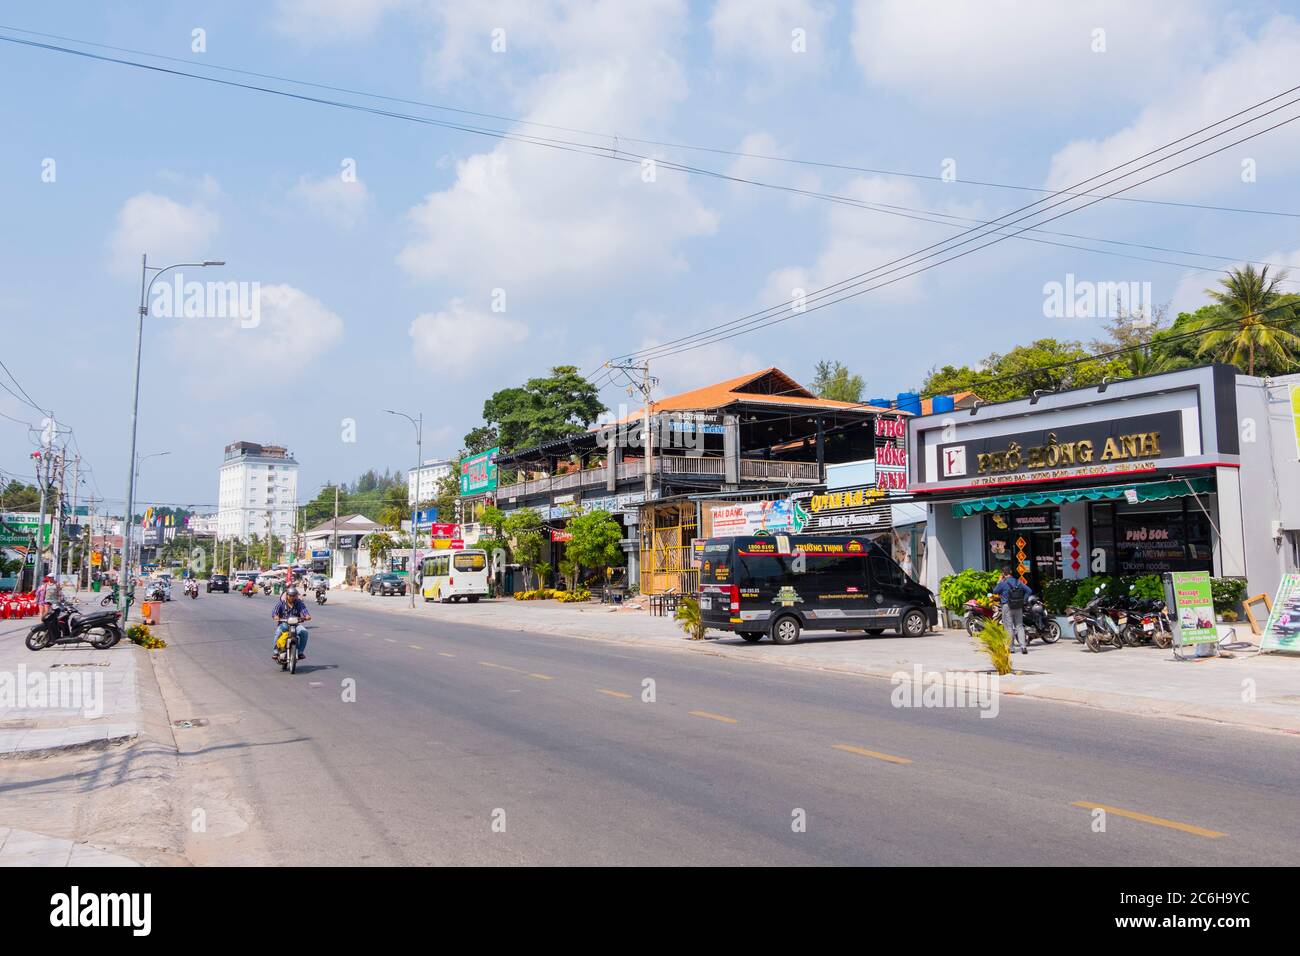 Duong Tran Hung Dao, main street, Duong Dong, Phu Quoc island, Vietnam, Asia Stock Photo